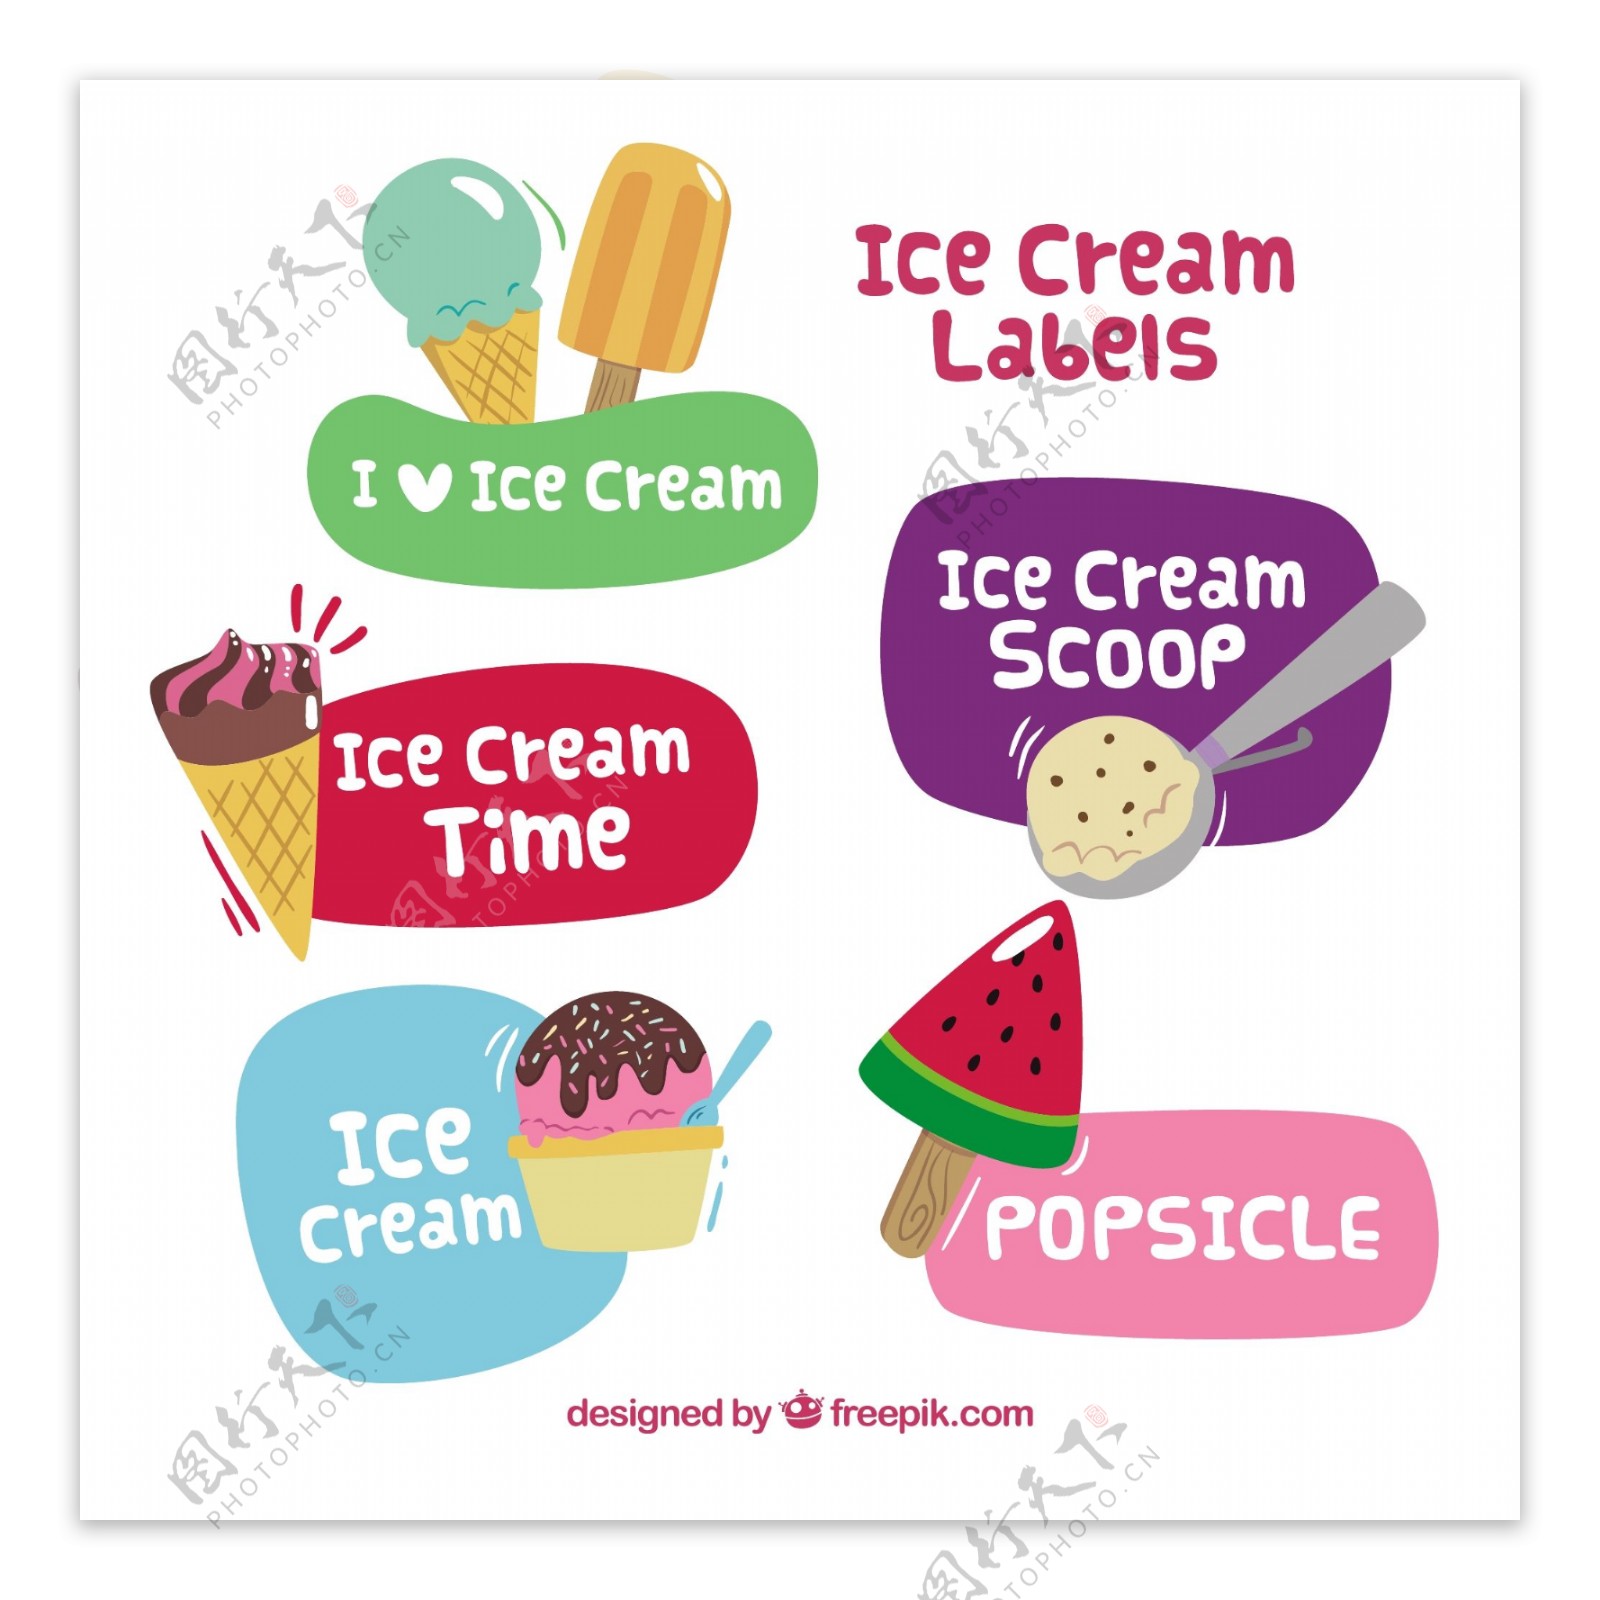 漂亮彩色冰激凌冰淇淋雪糕贴纸标签